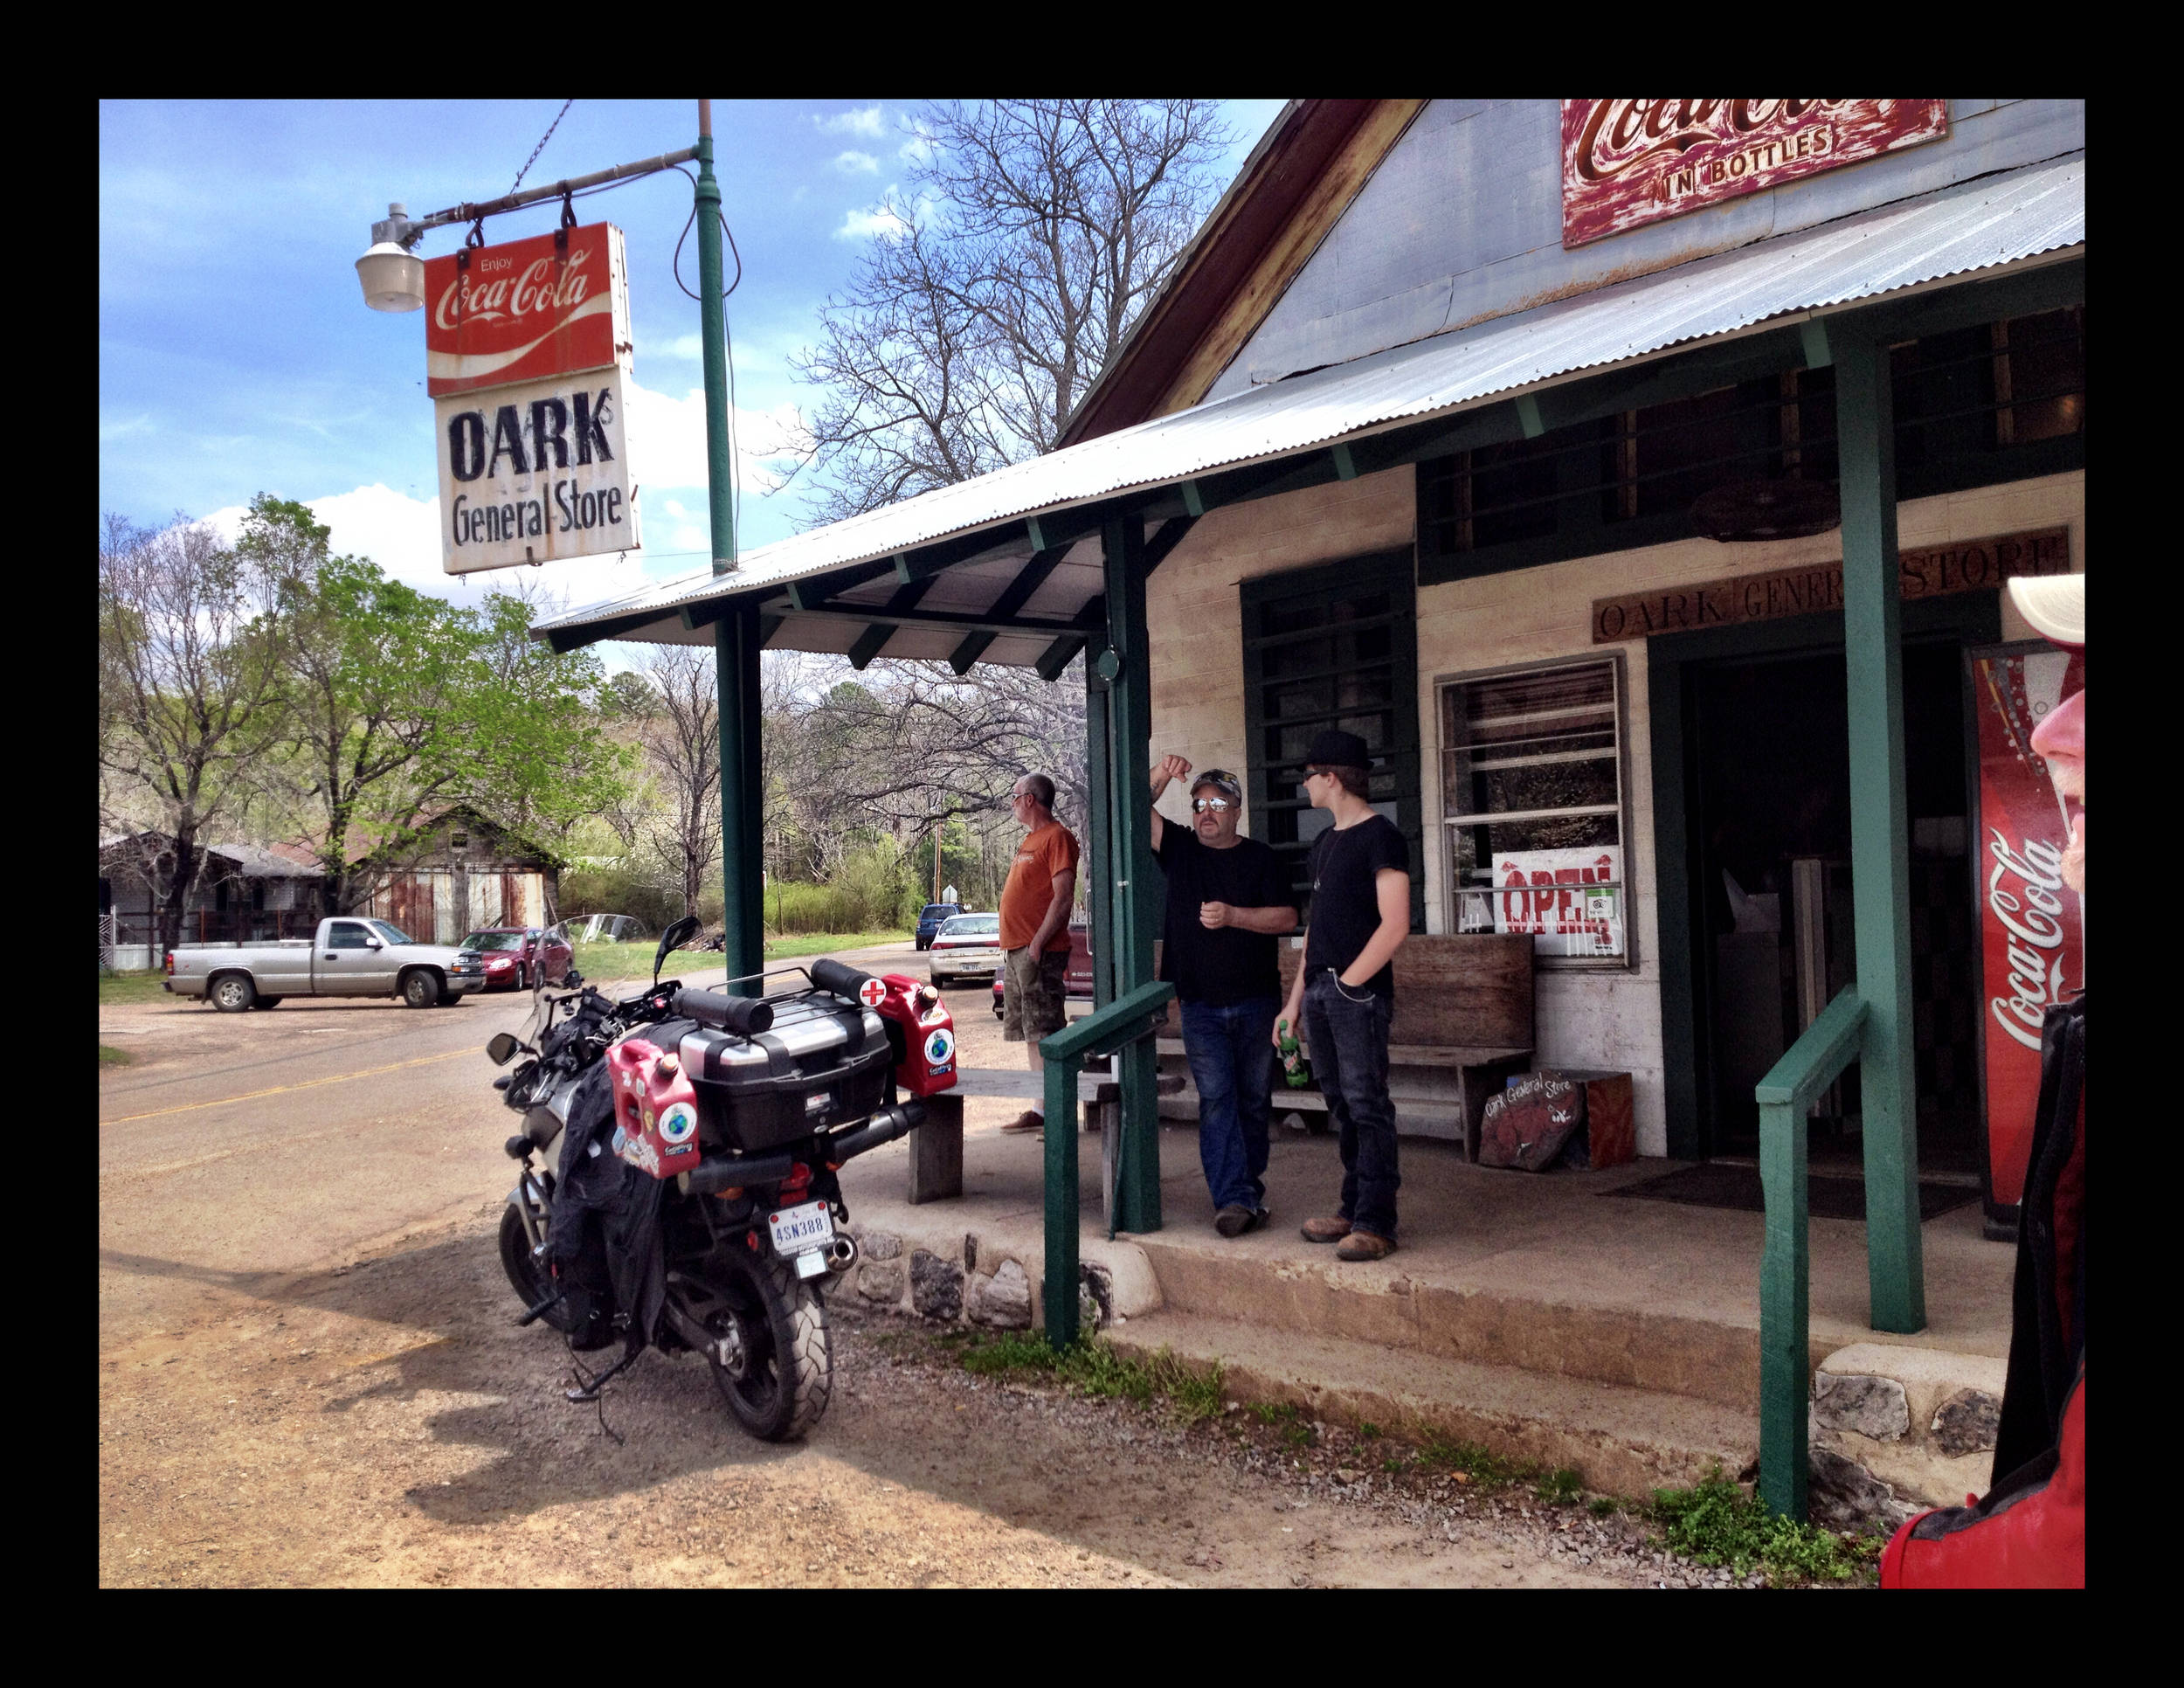 Oark Cafe - Oldest in Arkansas